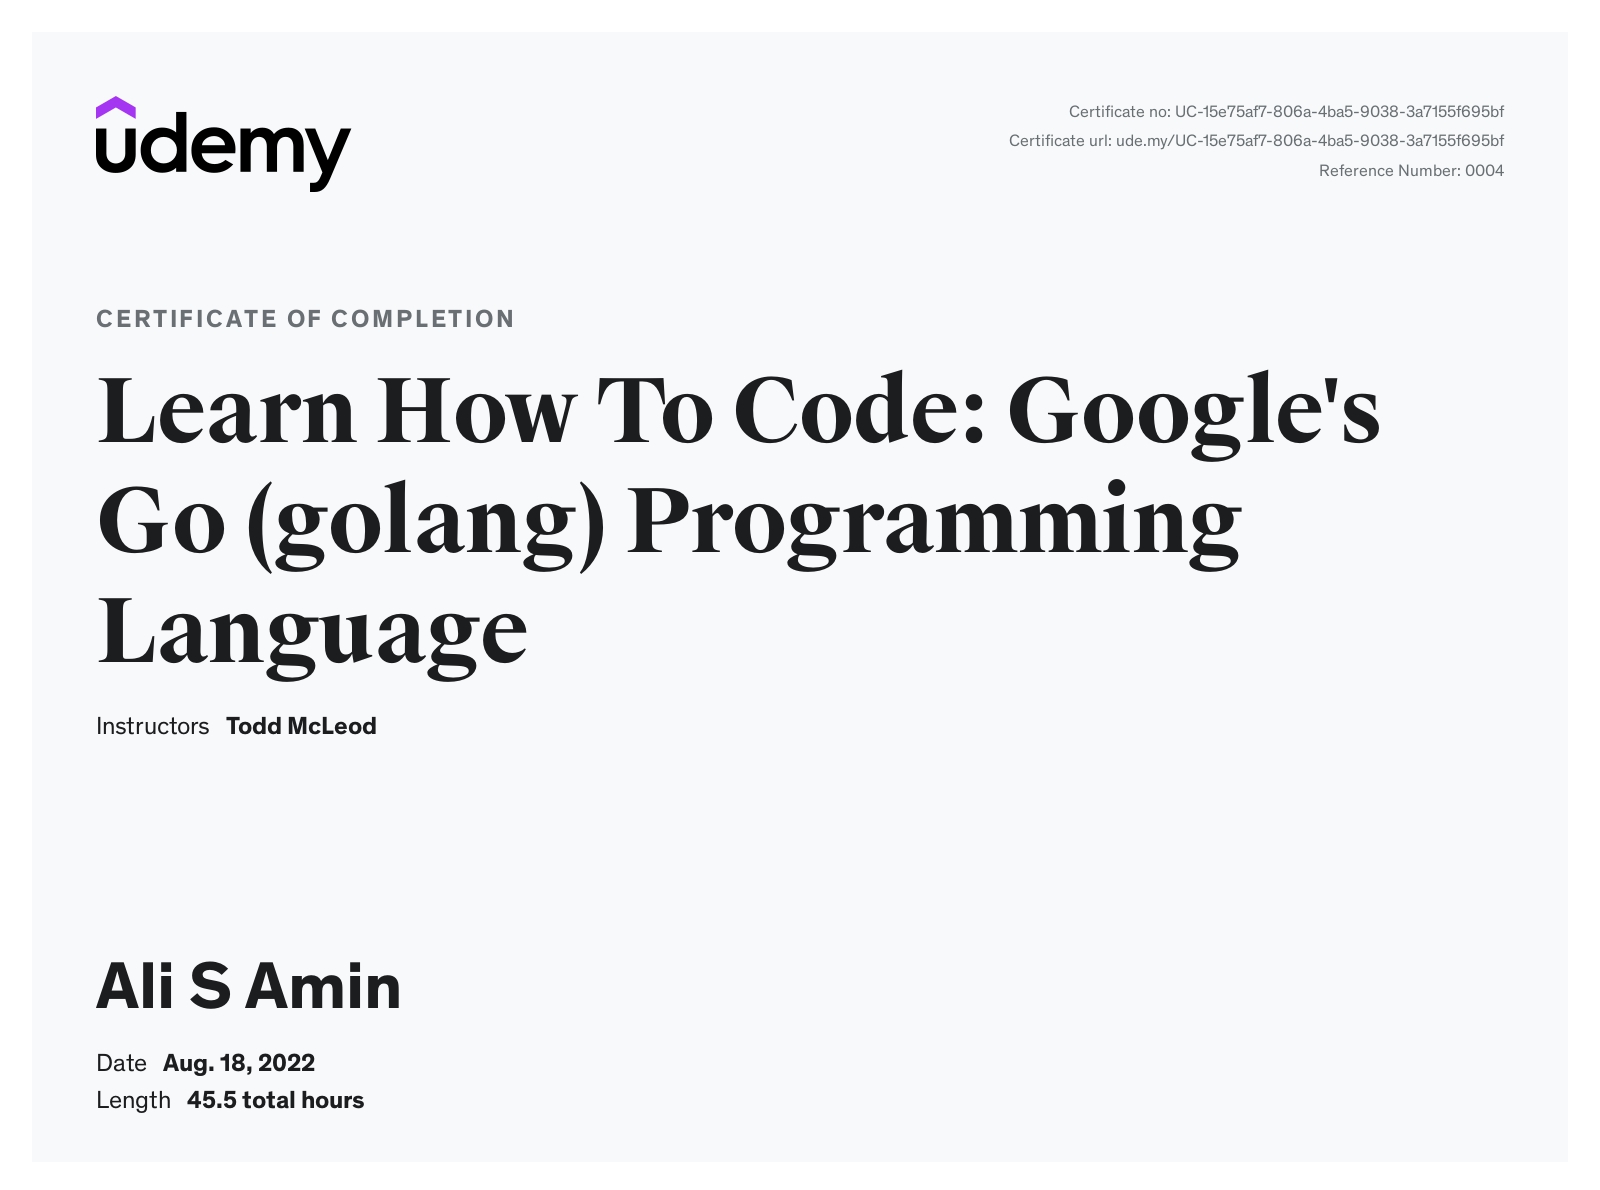 Google's Go (golang) Programming